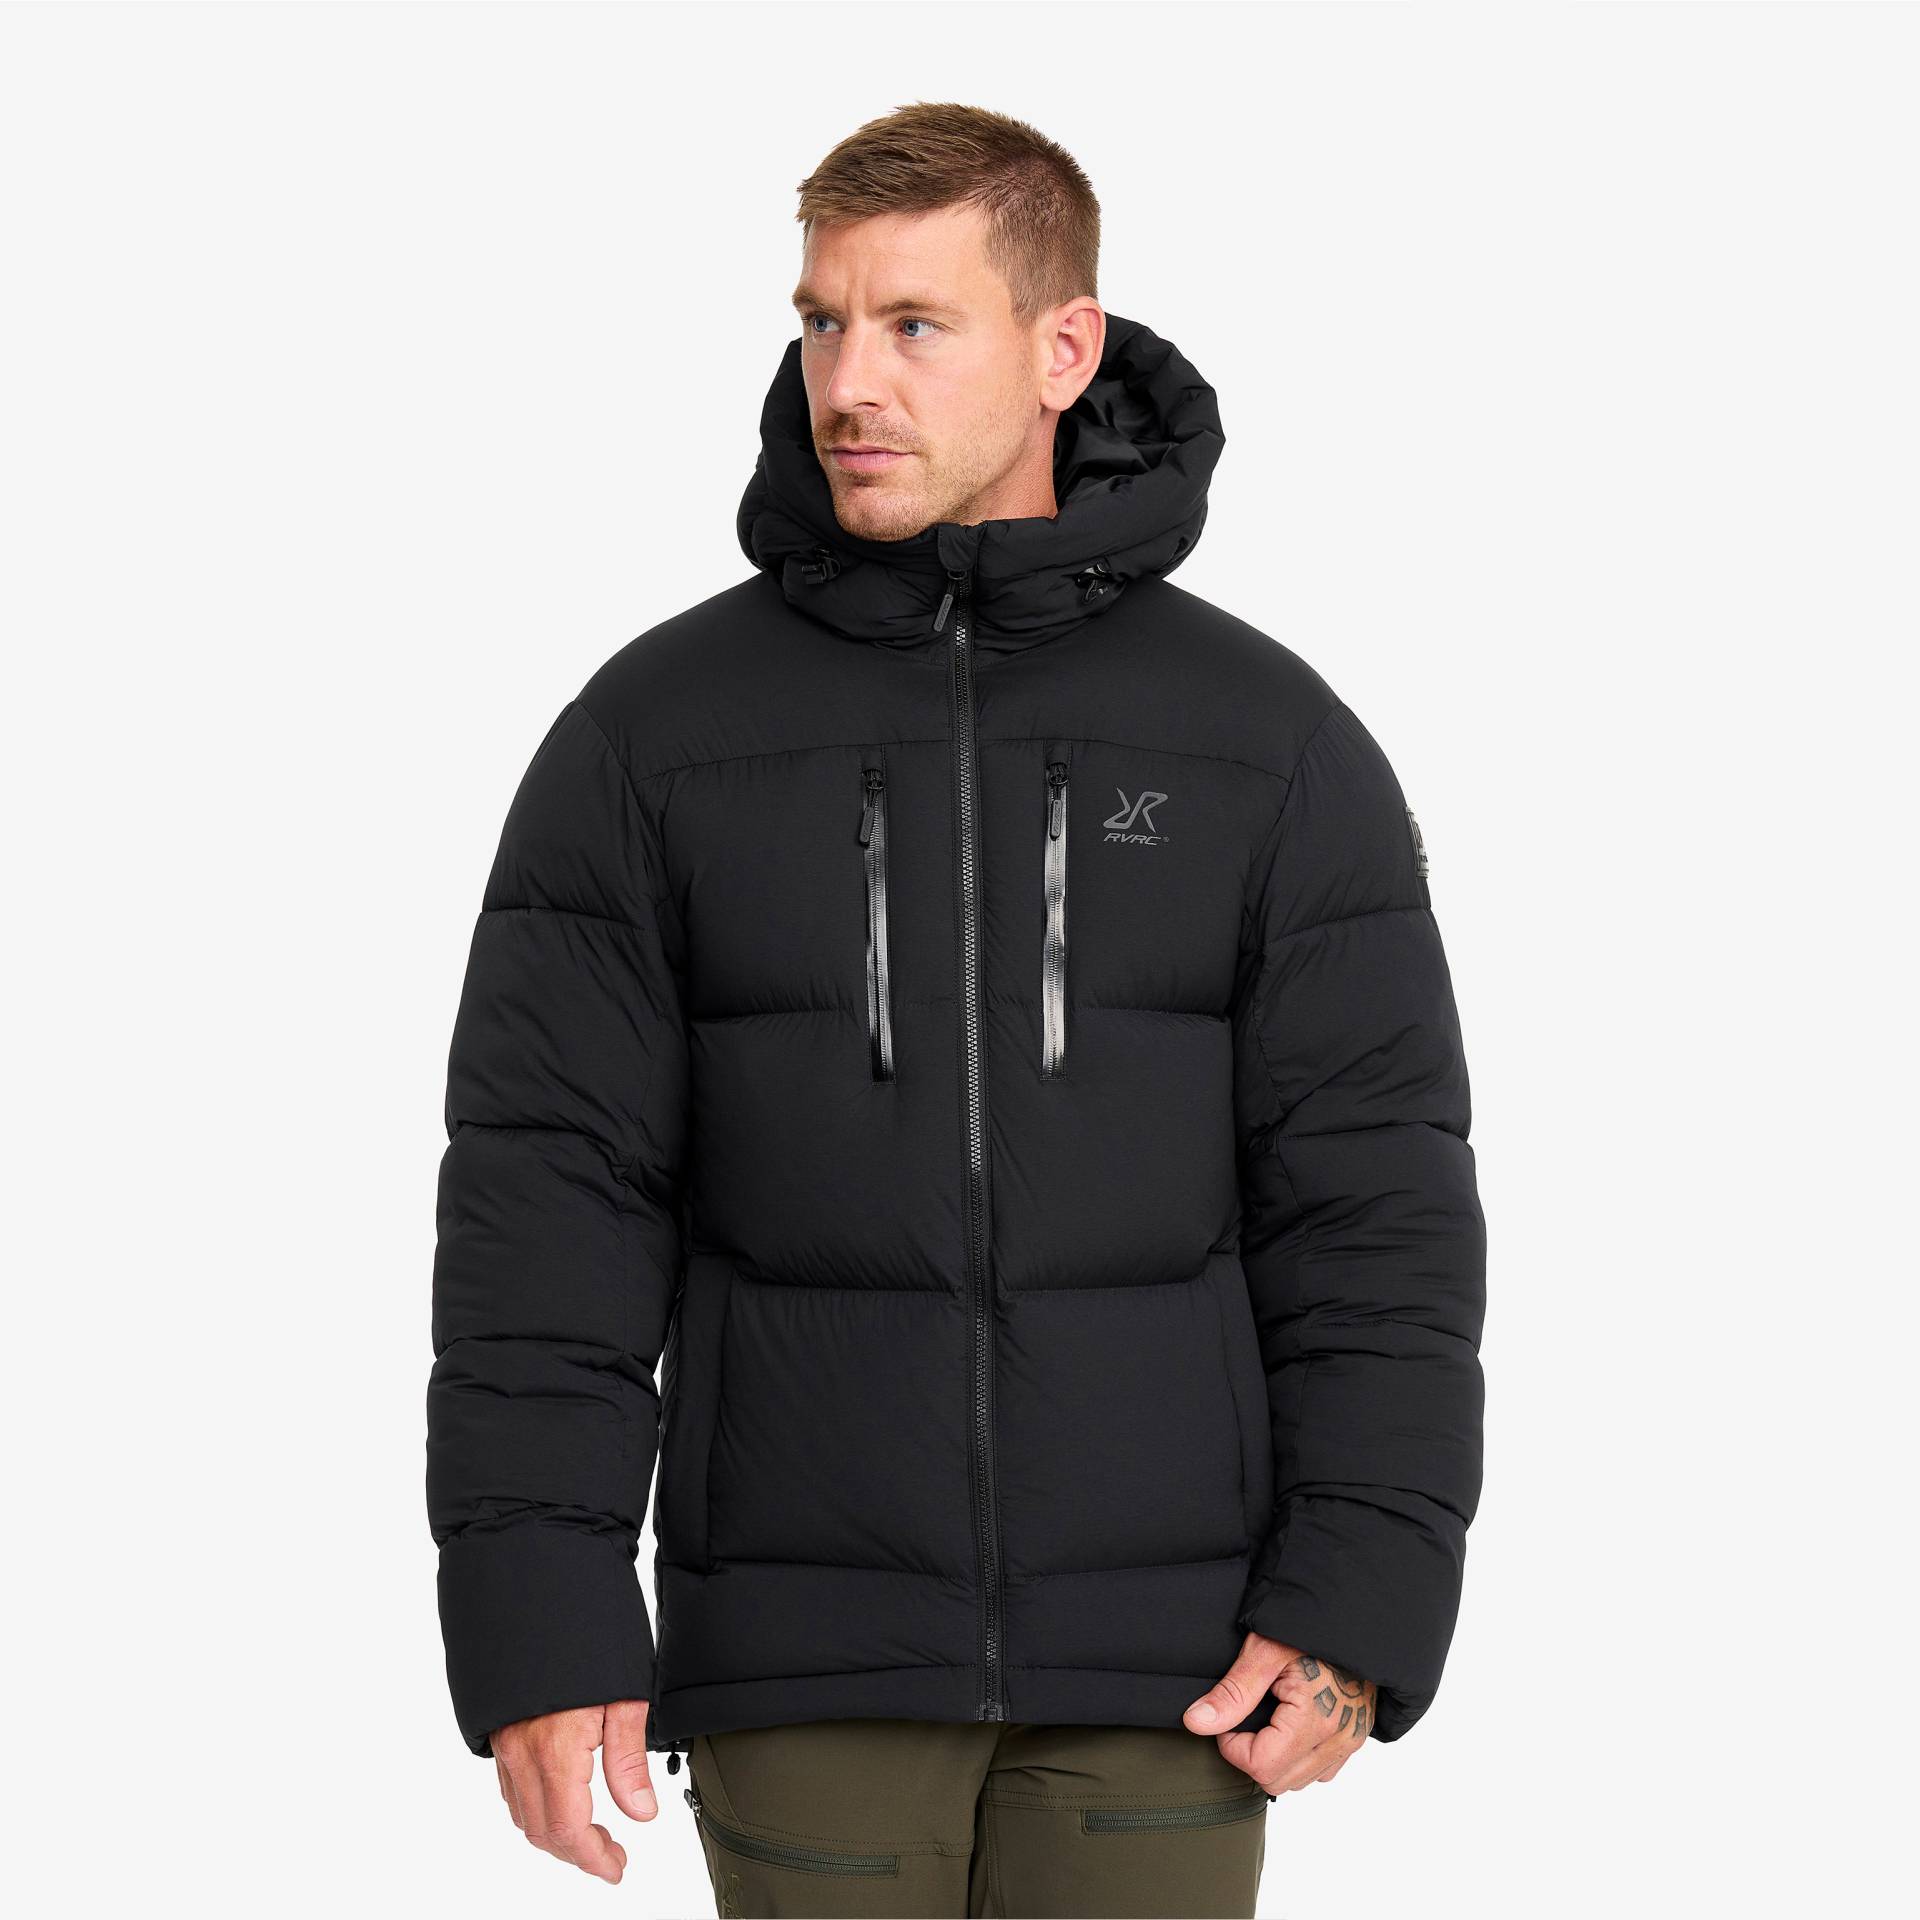 Flexpedition Down Jacket Herren Black, Größe:XL - Winterjacken von RevolutionRace